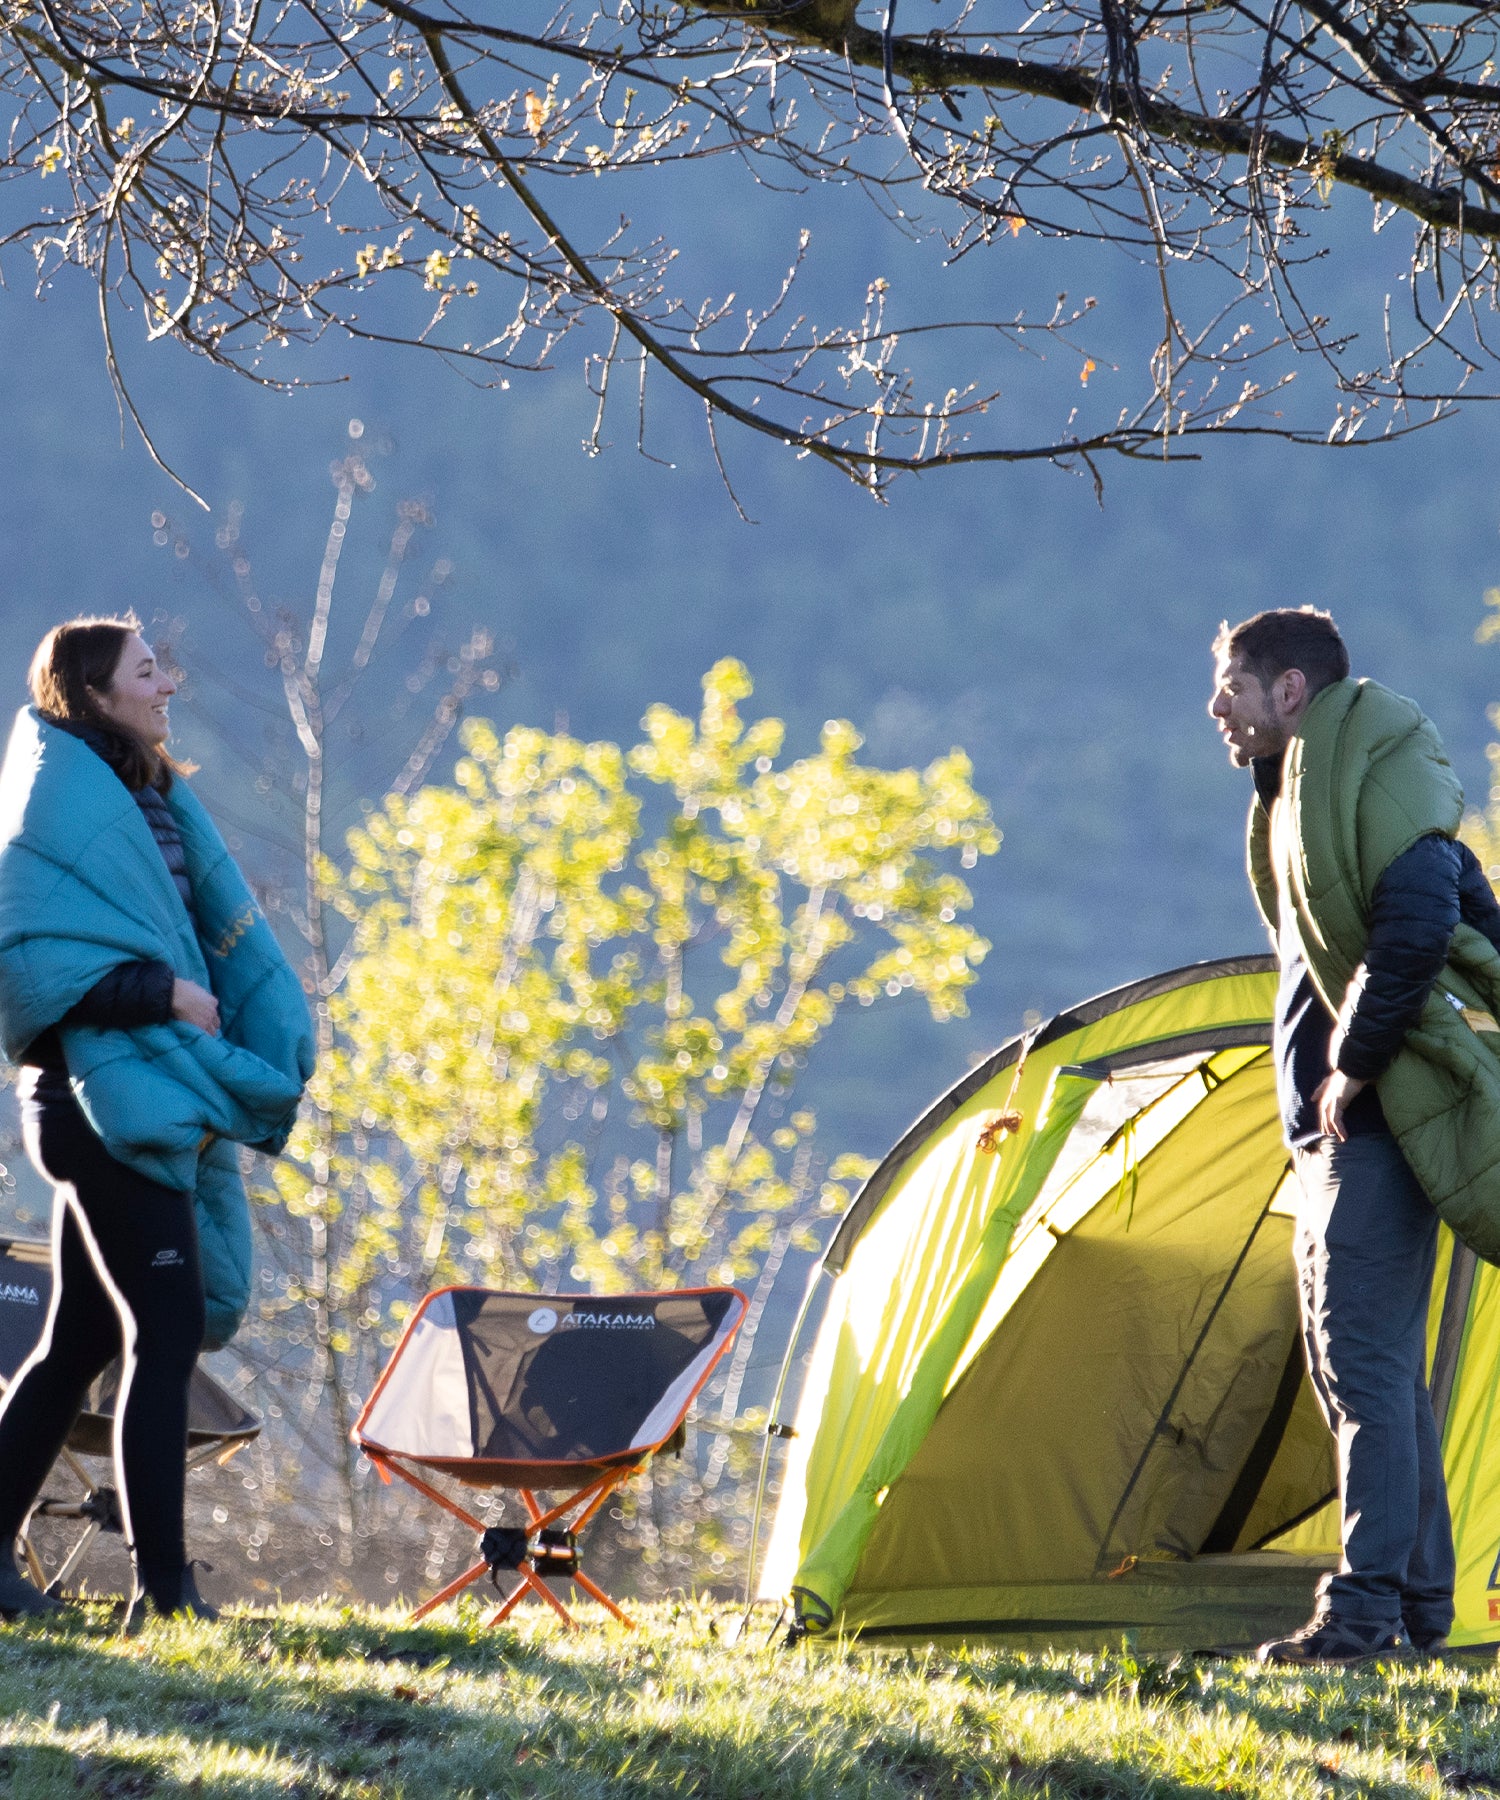 Saco de dormir Radal elaborado para ir de camping o para aventuras en zonas de temperaturas más templadas, forma rectangular y capacidad de temperatura Límite: 3° C, Confort: 6° C y Extrema: -2° C.